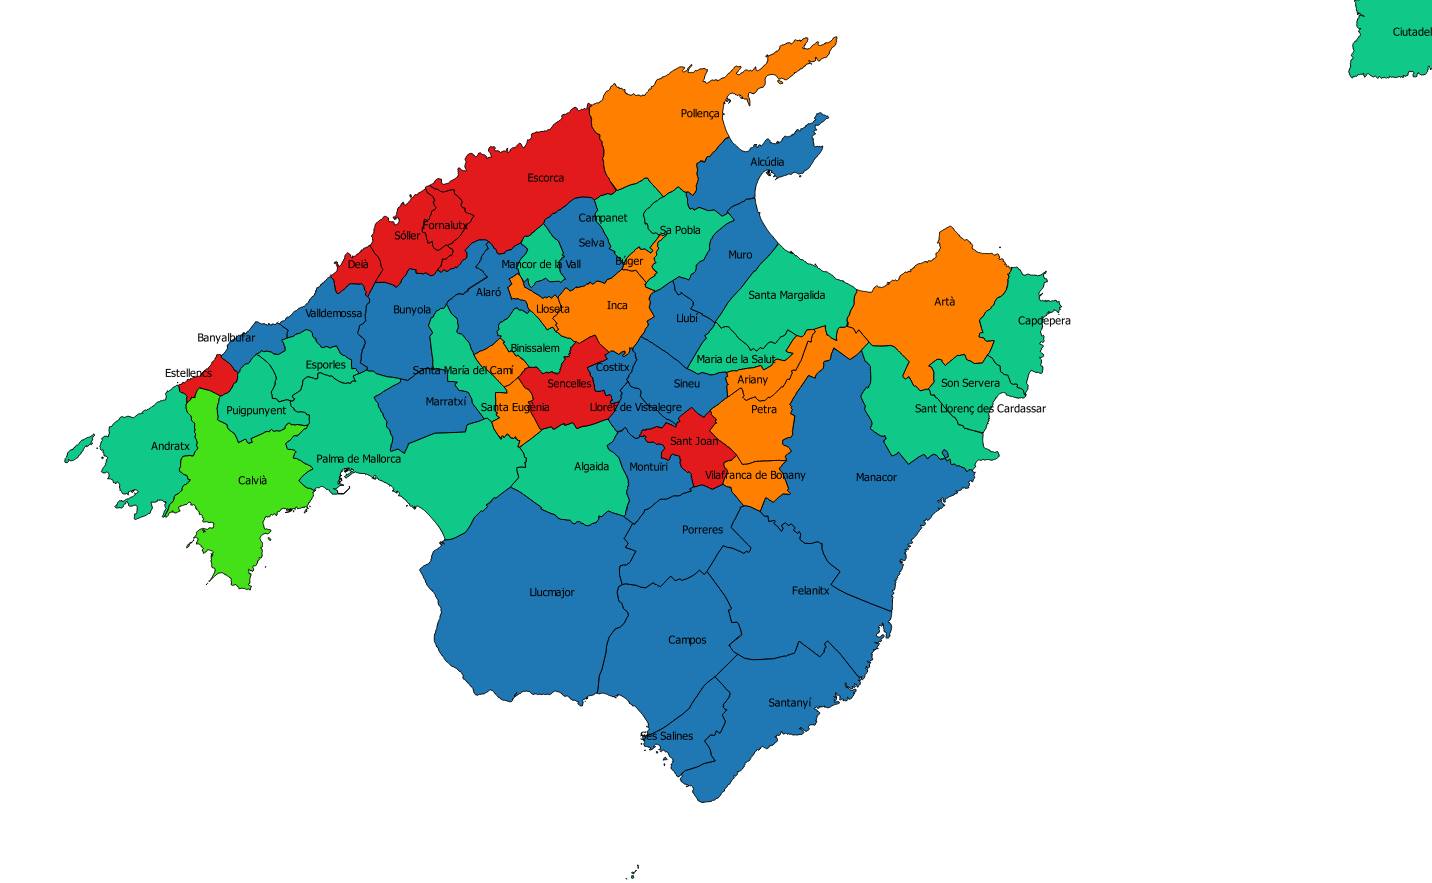 Els municipis en color verd i blau són els integrants del grup de treball